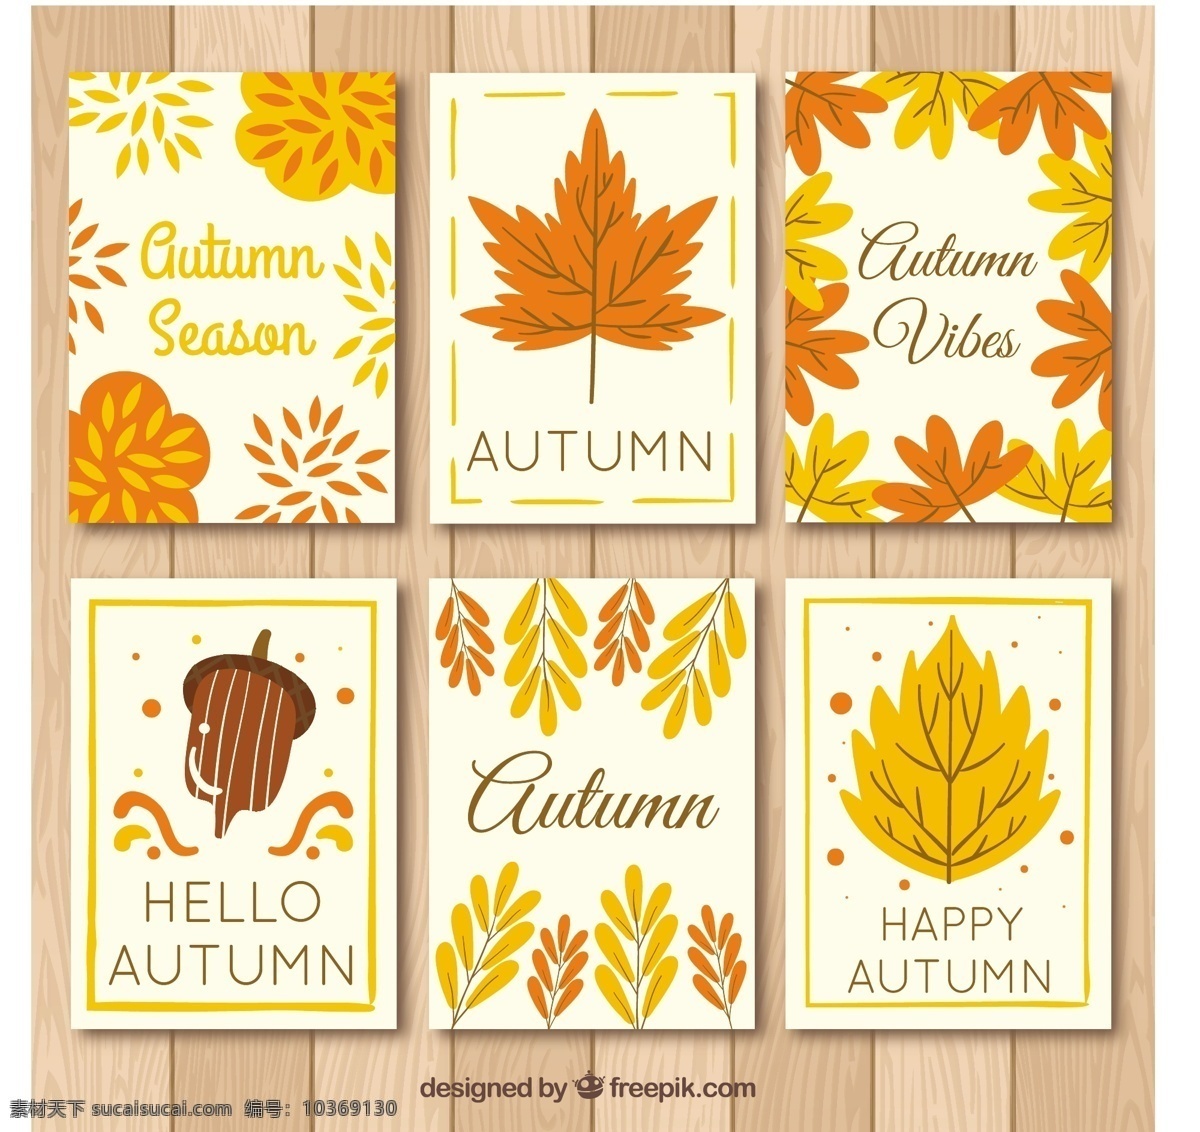 有趣 autumnla 卡 卡片 模板 树叶 自然 可爱 秋天 五颜六色 平 现代 平面设计 凉爽 树枝 秋叶 季节